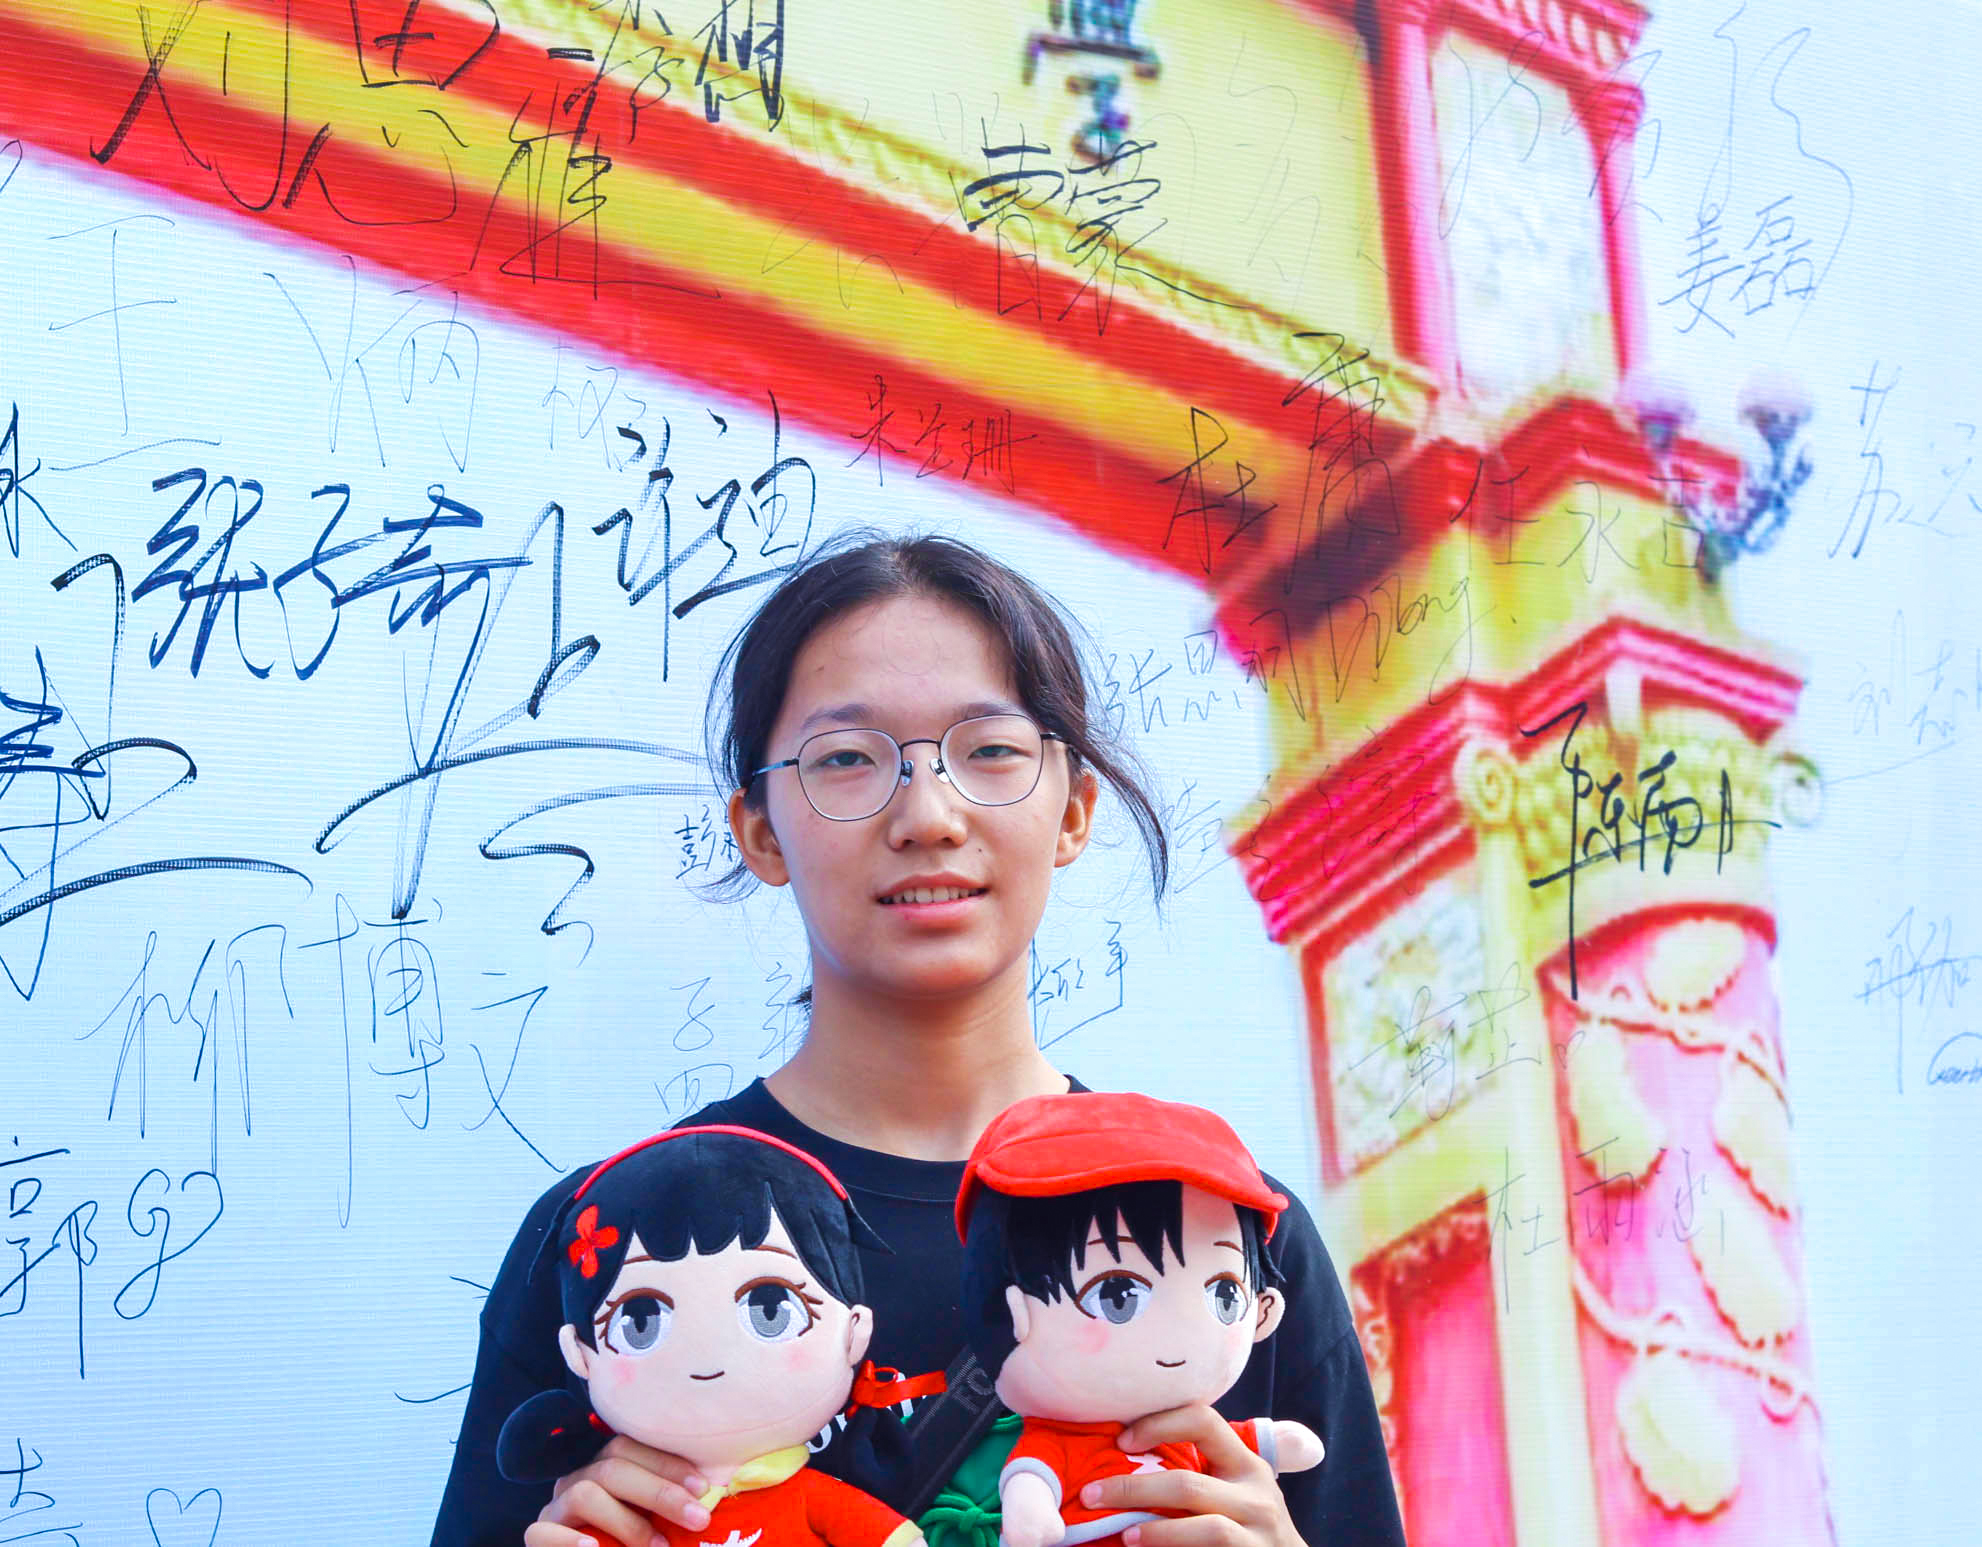 图为中南大学22级新生和小中兄妹玩偶的合照。